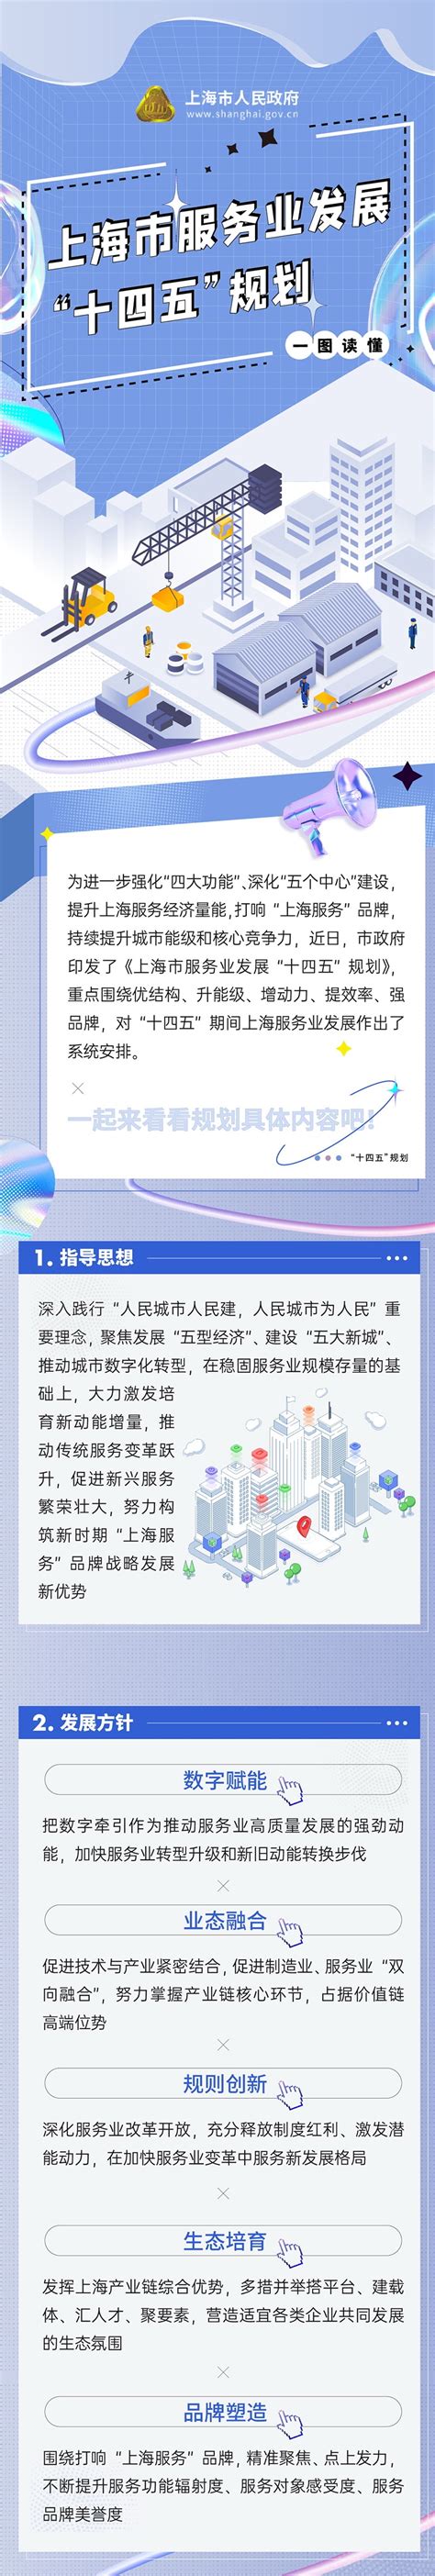 中国太保开启进博服务2.0模式，在全球舞台打响“上海服务”品牌